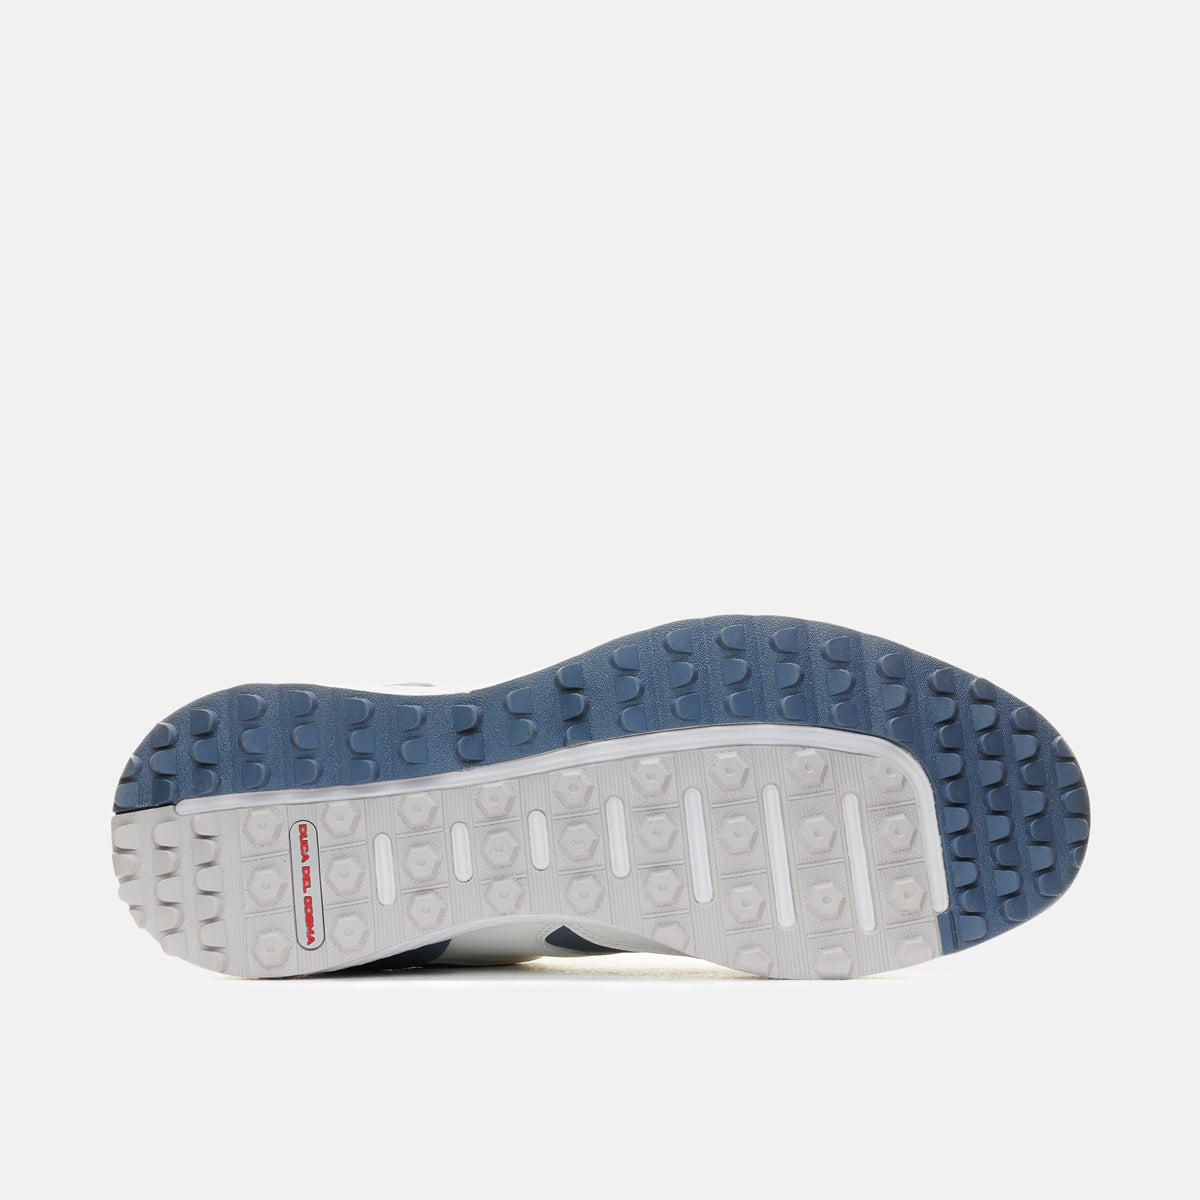 Pagani White/Grey Men's Golf Shoes